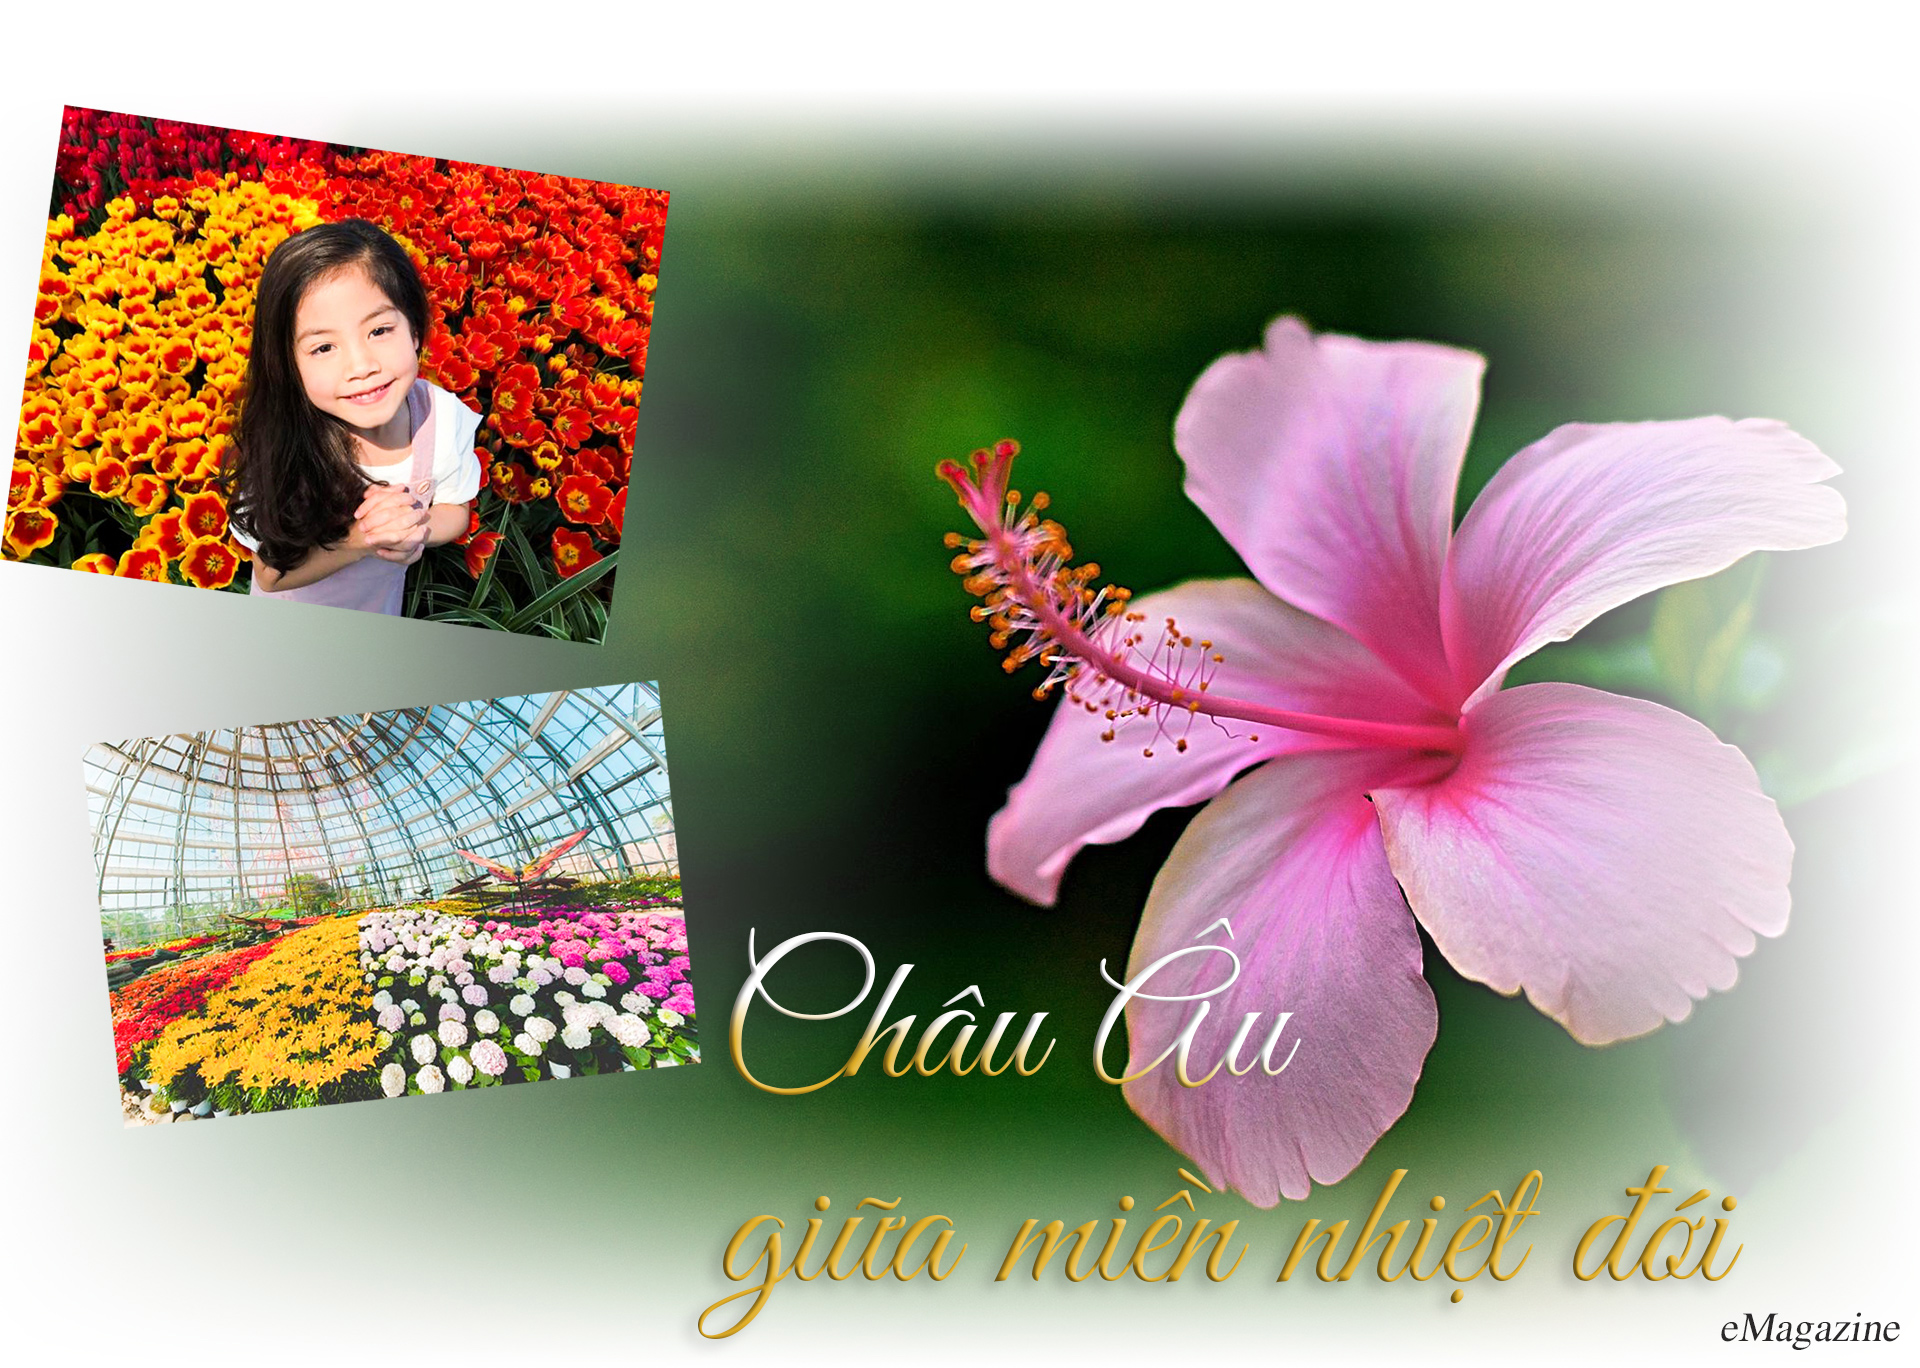 Khám phá khu vườn “kỳ hoa dị thảo” trên đảo kỷ lục tại Nha Trang - 5